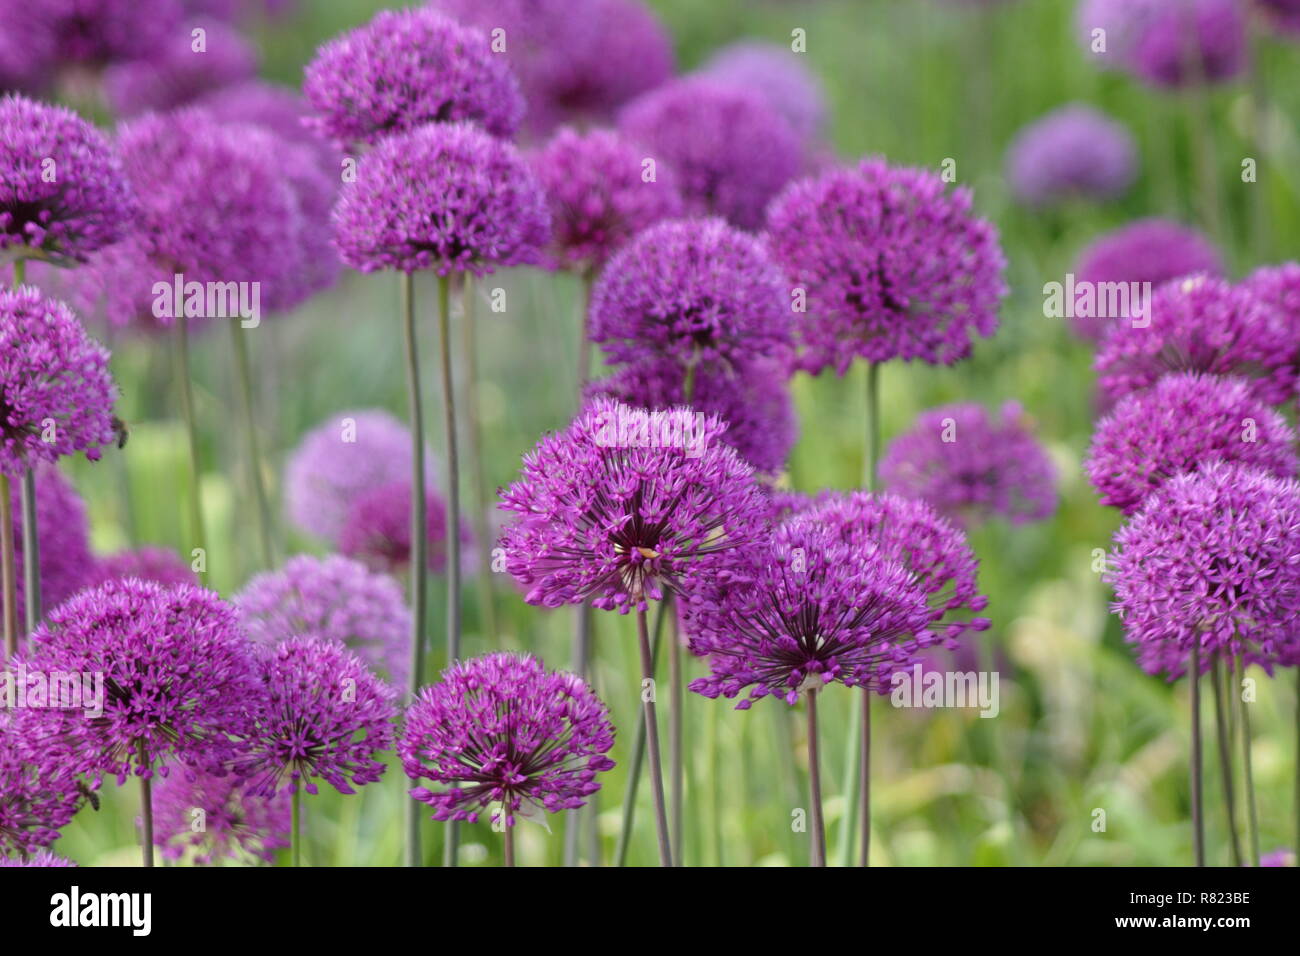 Allium Hollandicum 'Purple Sensation', riesige ornamentale Zwiebeln, genannt auch holländische Knoblauch, Mai, UK Garten Stockfoto